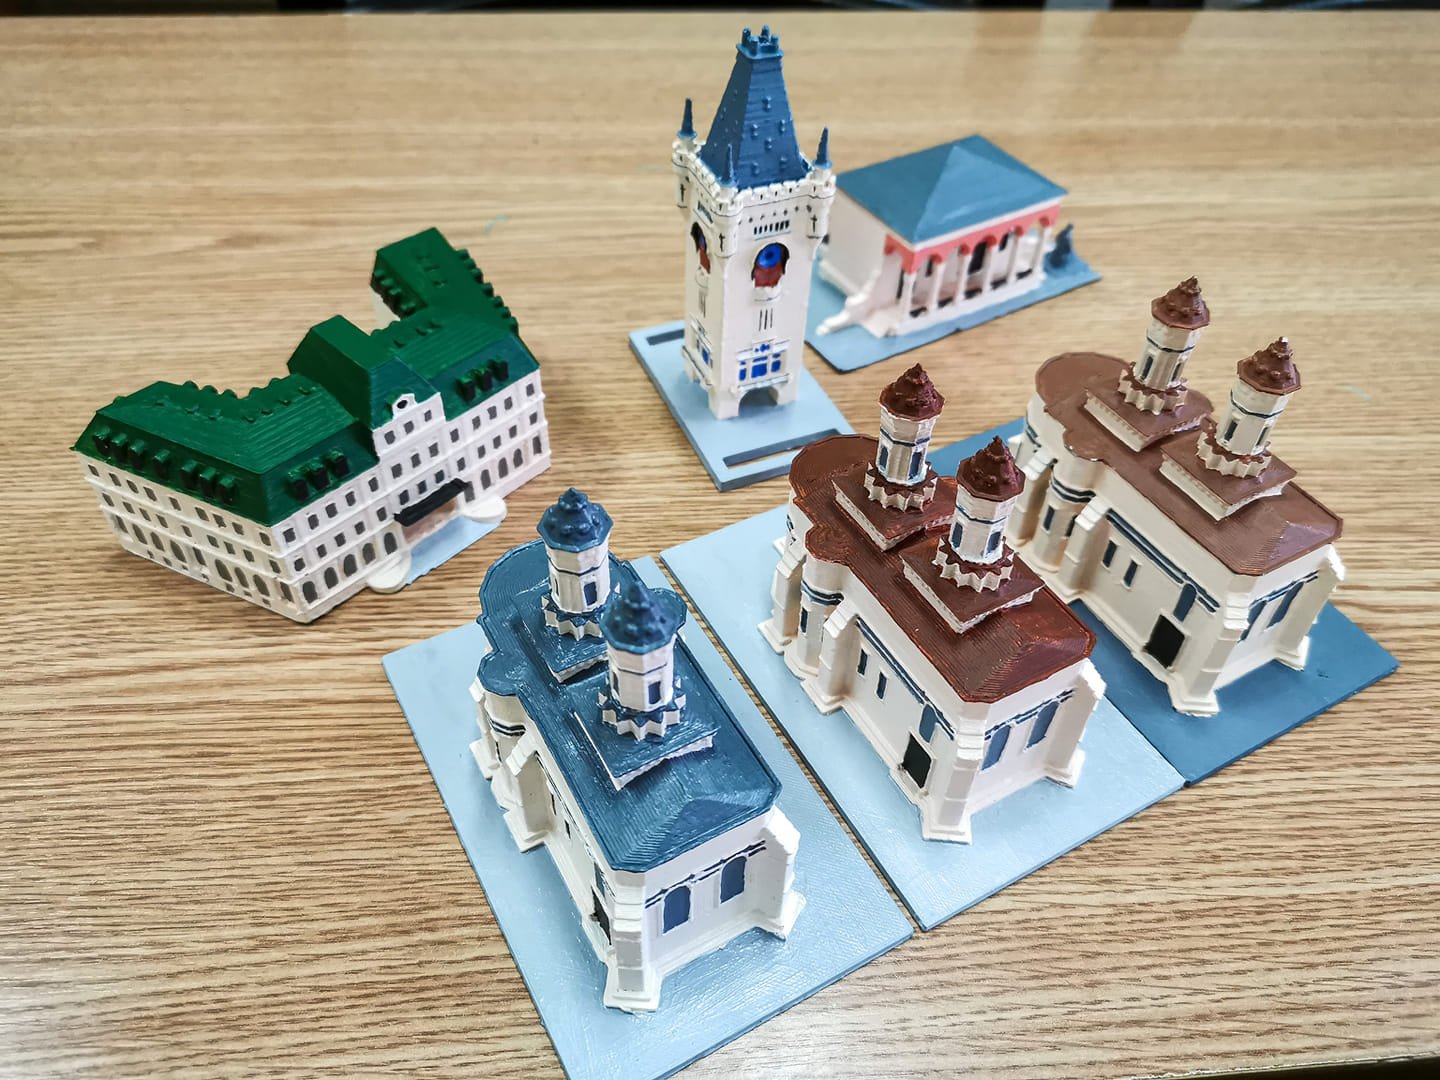  Clădiri emblematice din Iaşi, realizate în miniatură. Tehnica folosită este unică